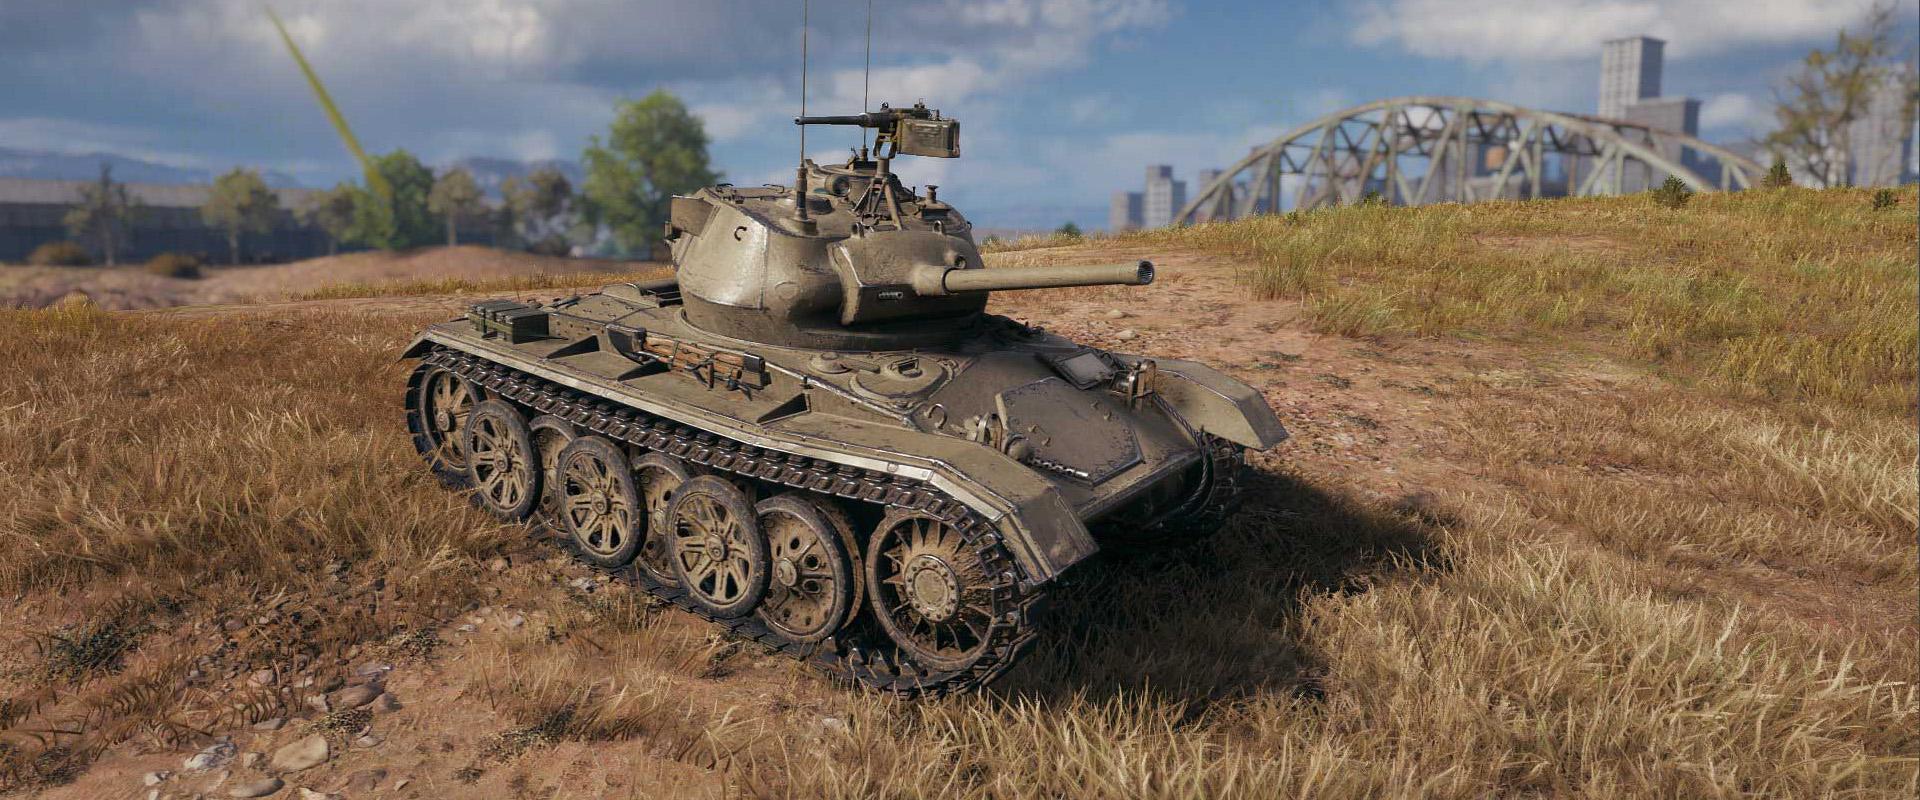 A jól ismert könnyű tank kicsit másképp: M24 Chaffee No. 594 bemutató